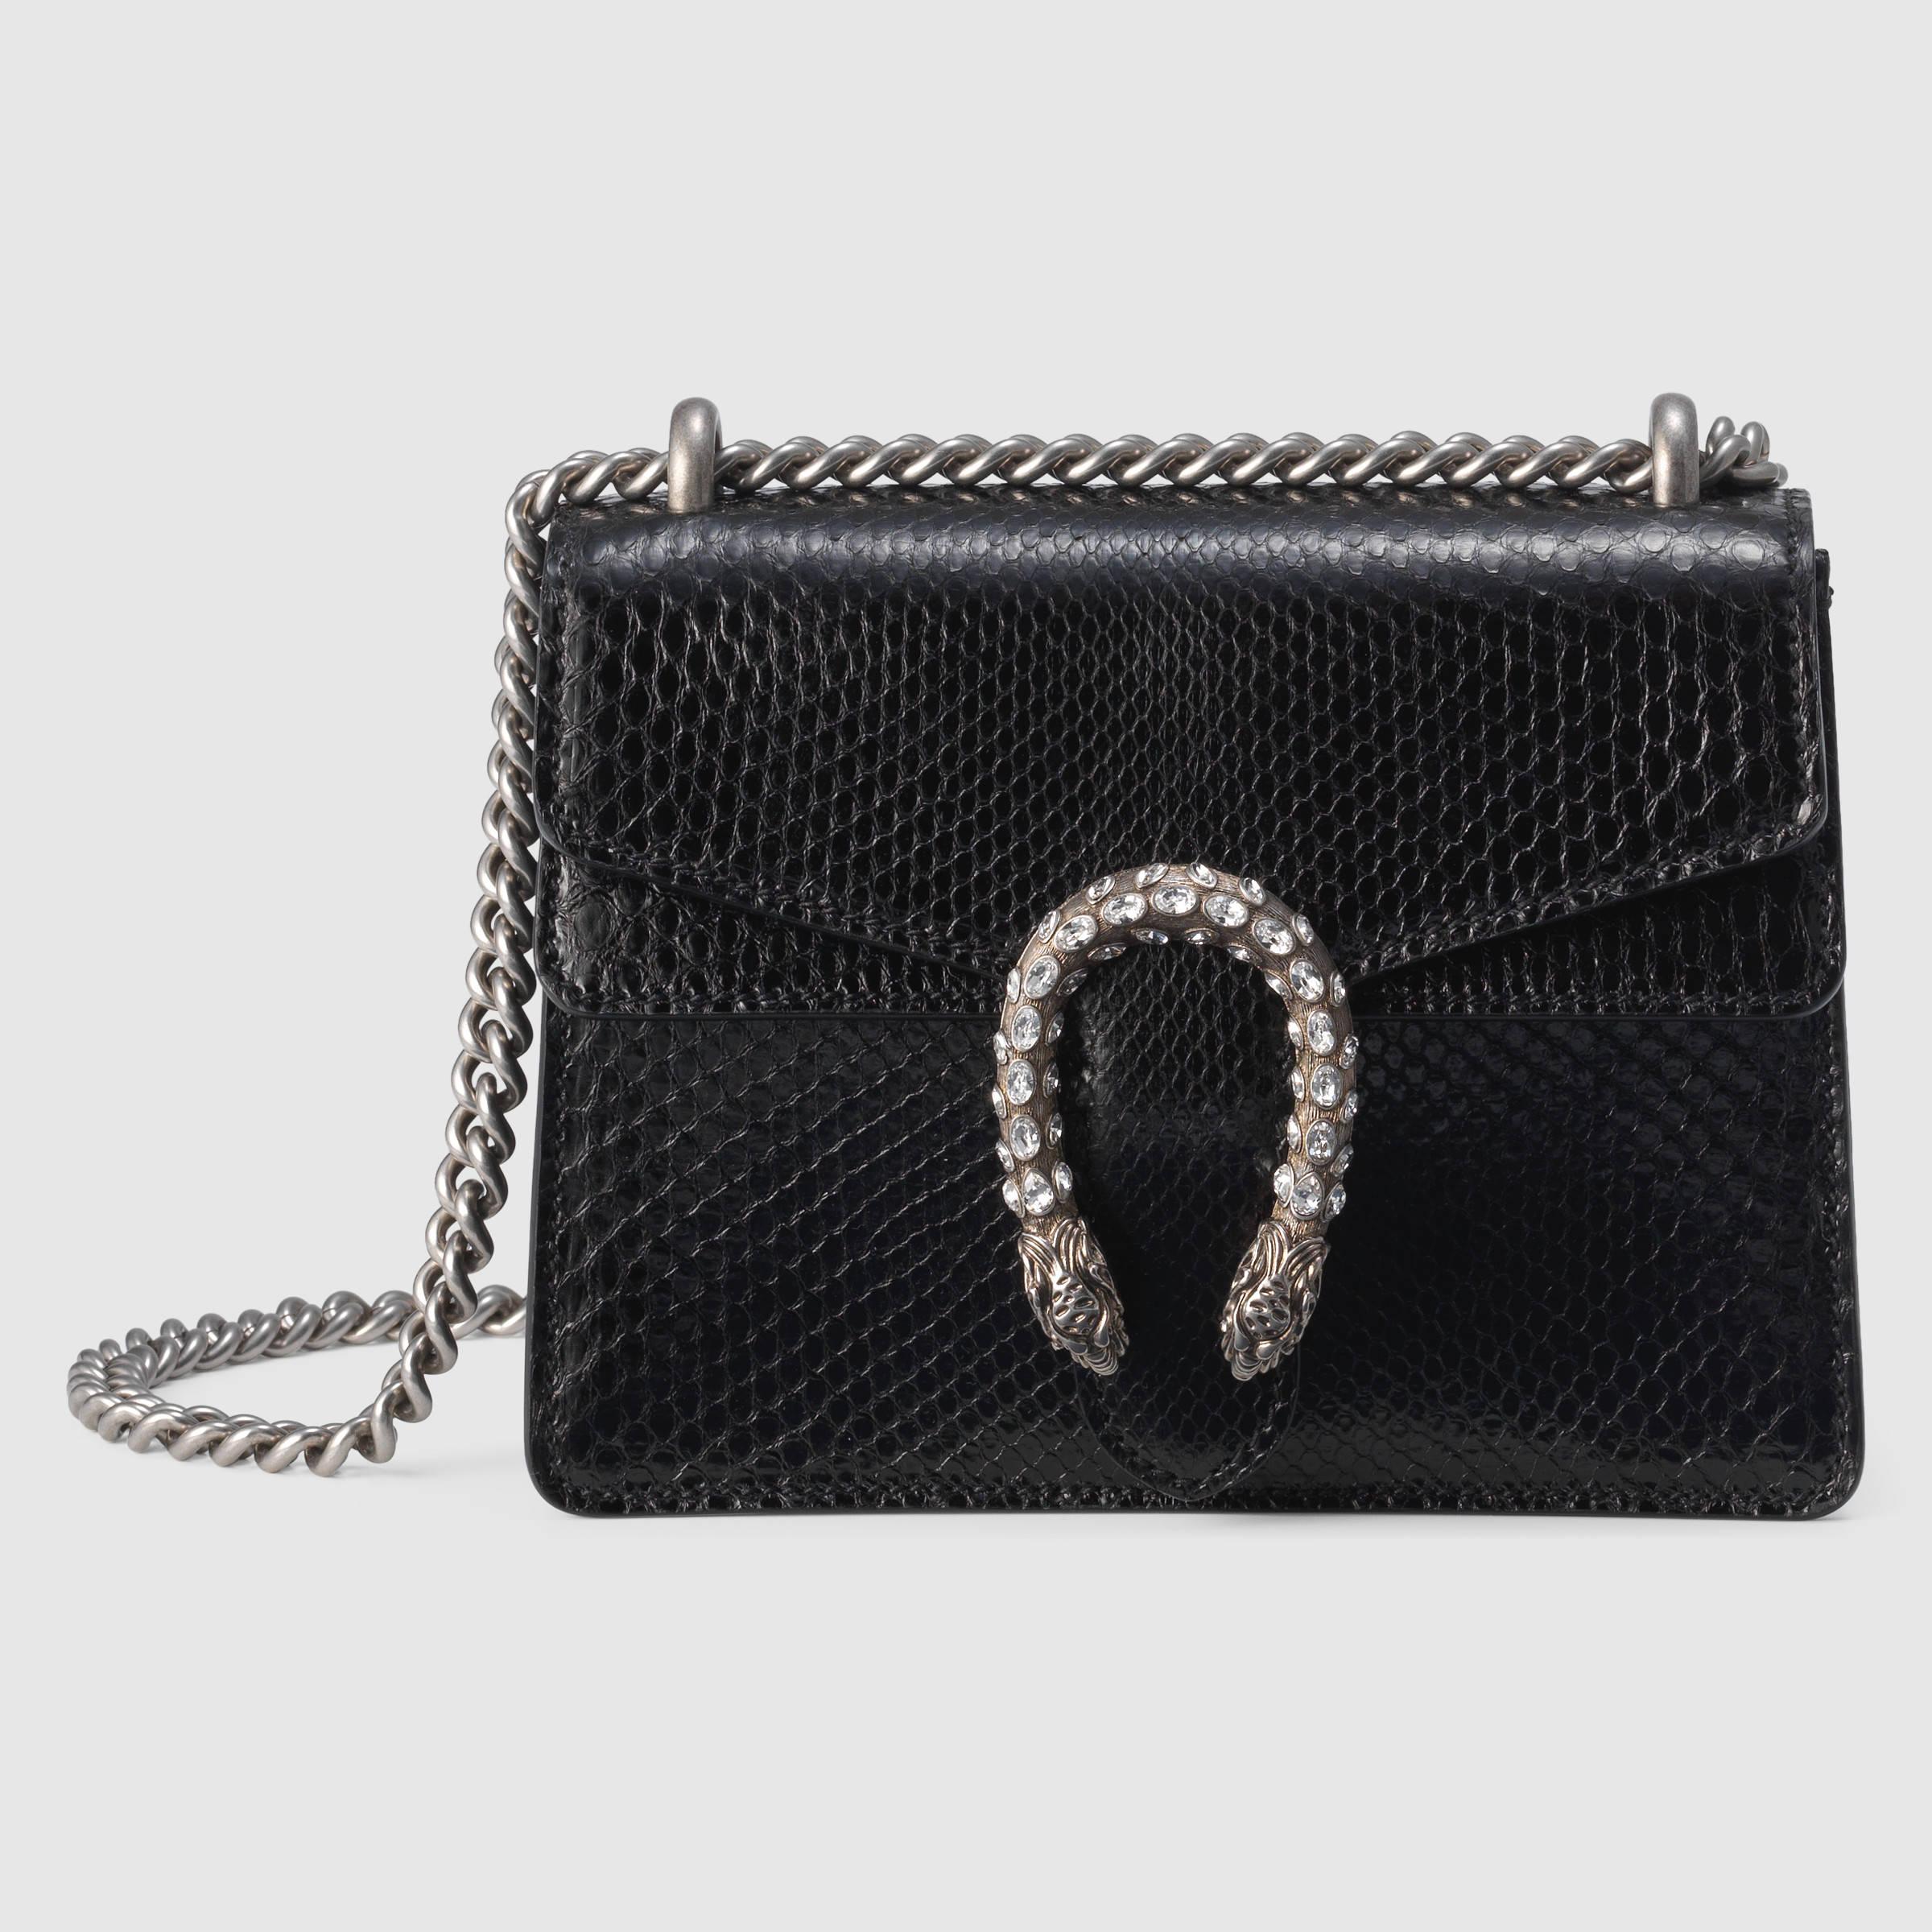 Gucci Dionysus Python Mini Bag in Black | Lyst